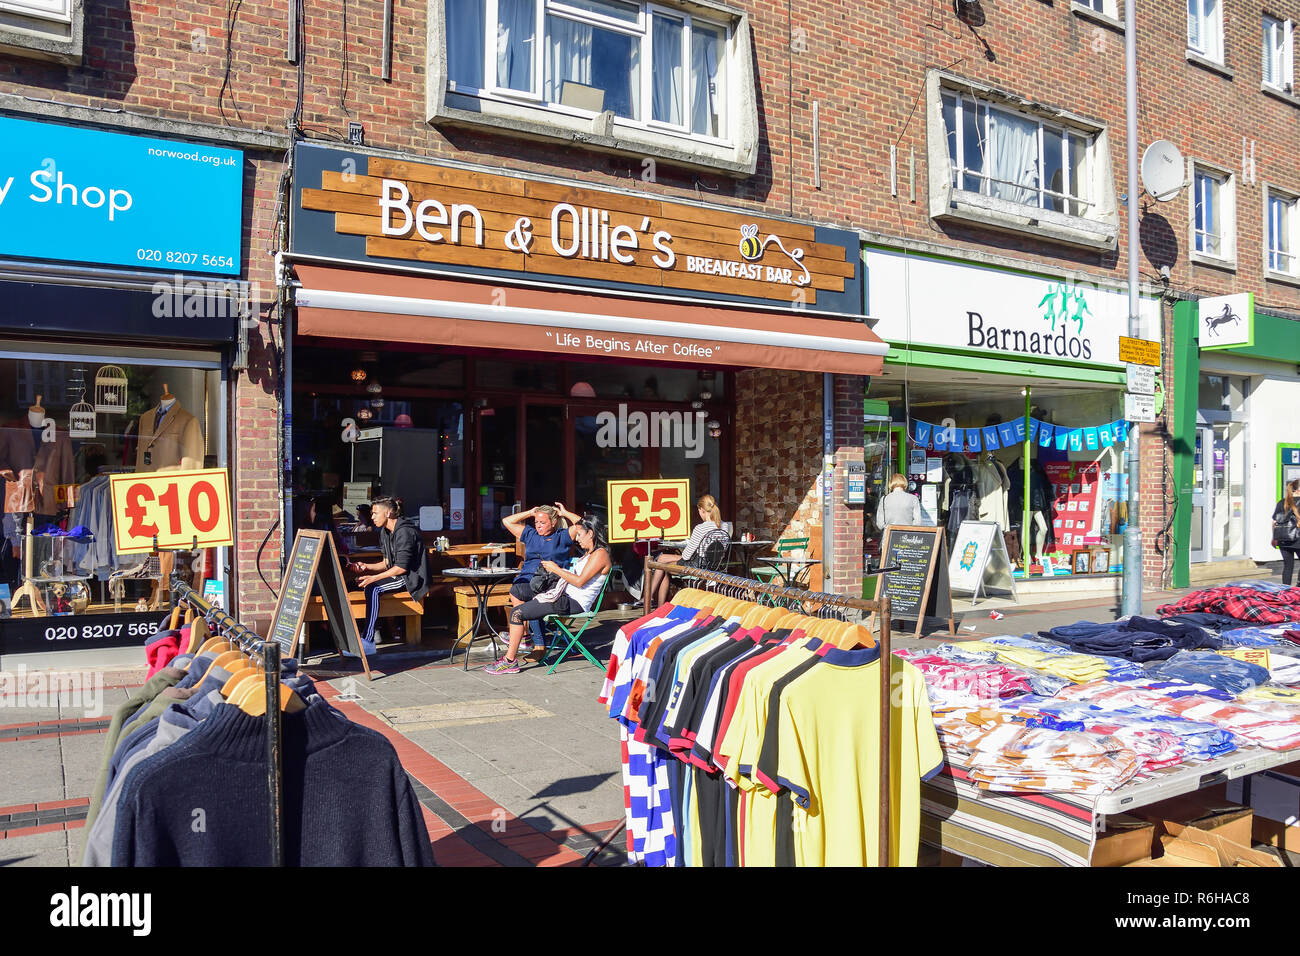 Street clothing stall, Shenley Road, Borehamwood, Hertfordshire, England, United Kingdom Stock Photo